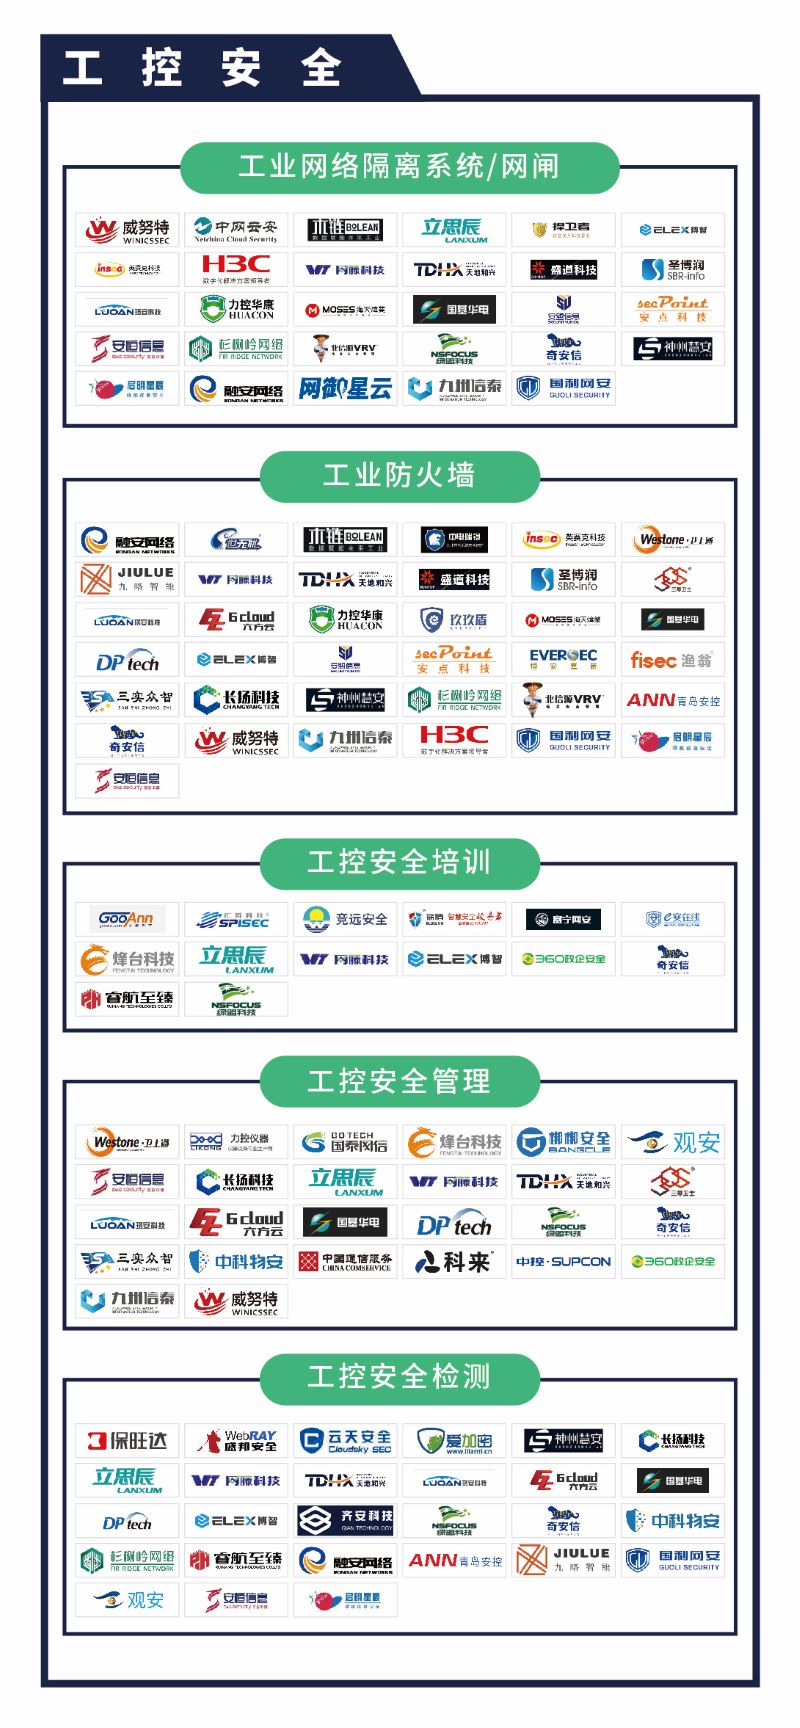 《CCSIP 2020中国网络安全产业全景图》正式发布 | FreeBuf咨询-第19张图片-网盾网络安全培训